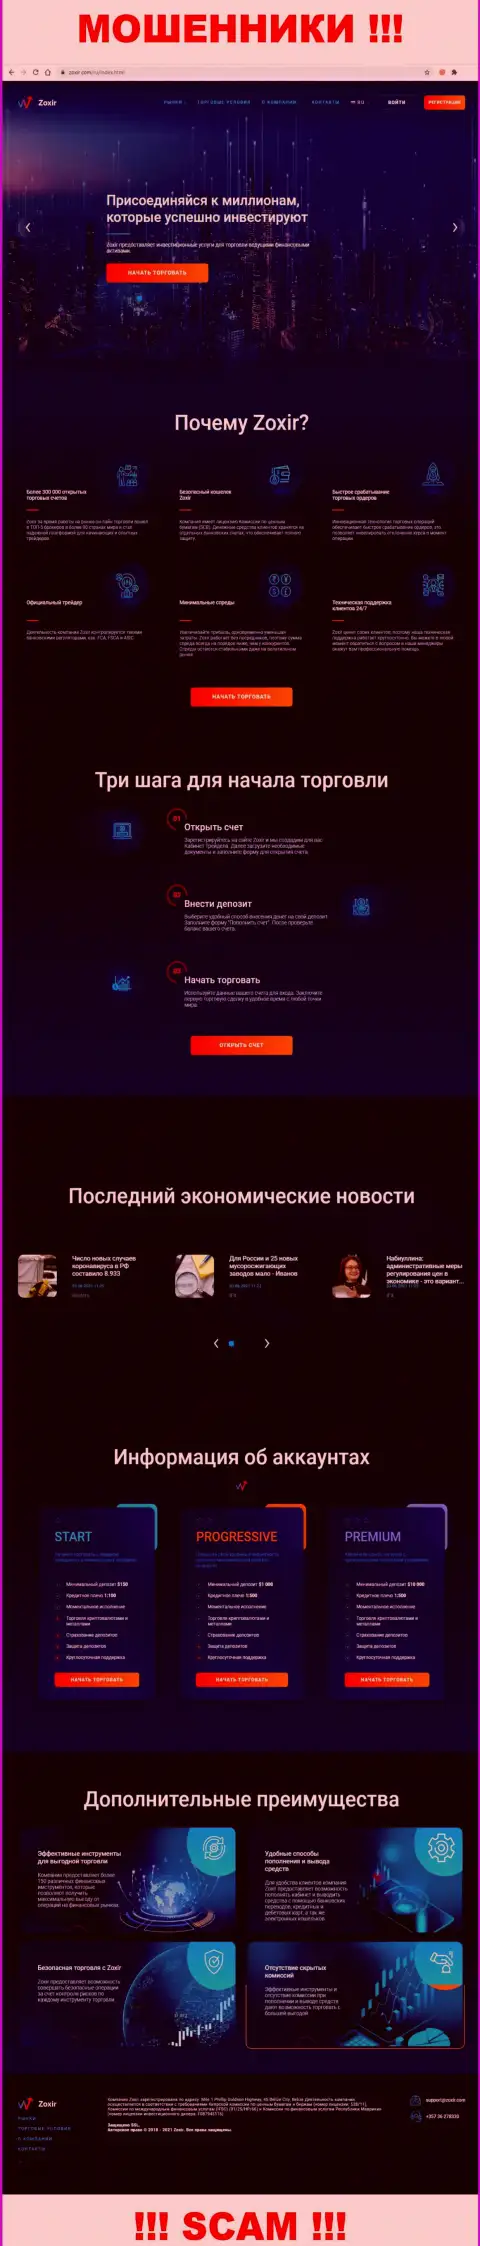 Сайт мошеннической конторы Зохир - Зохир Ком